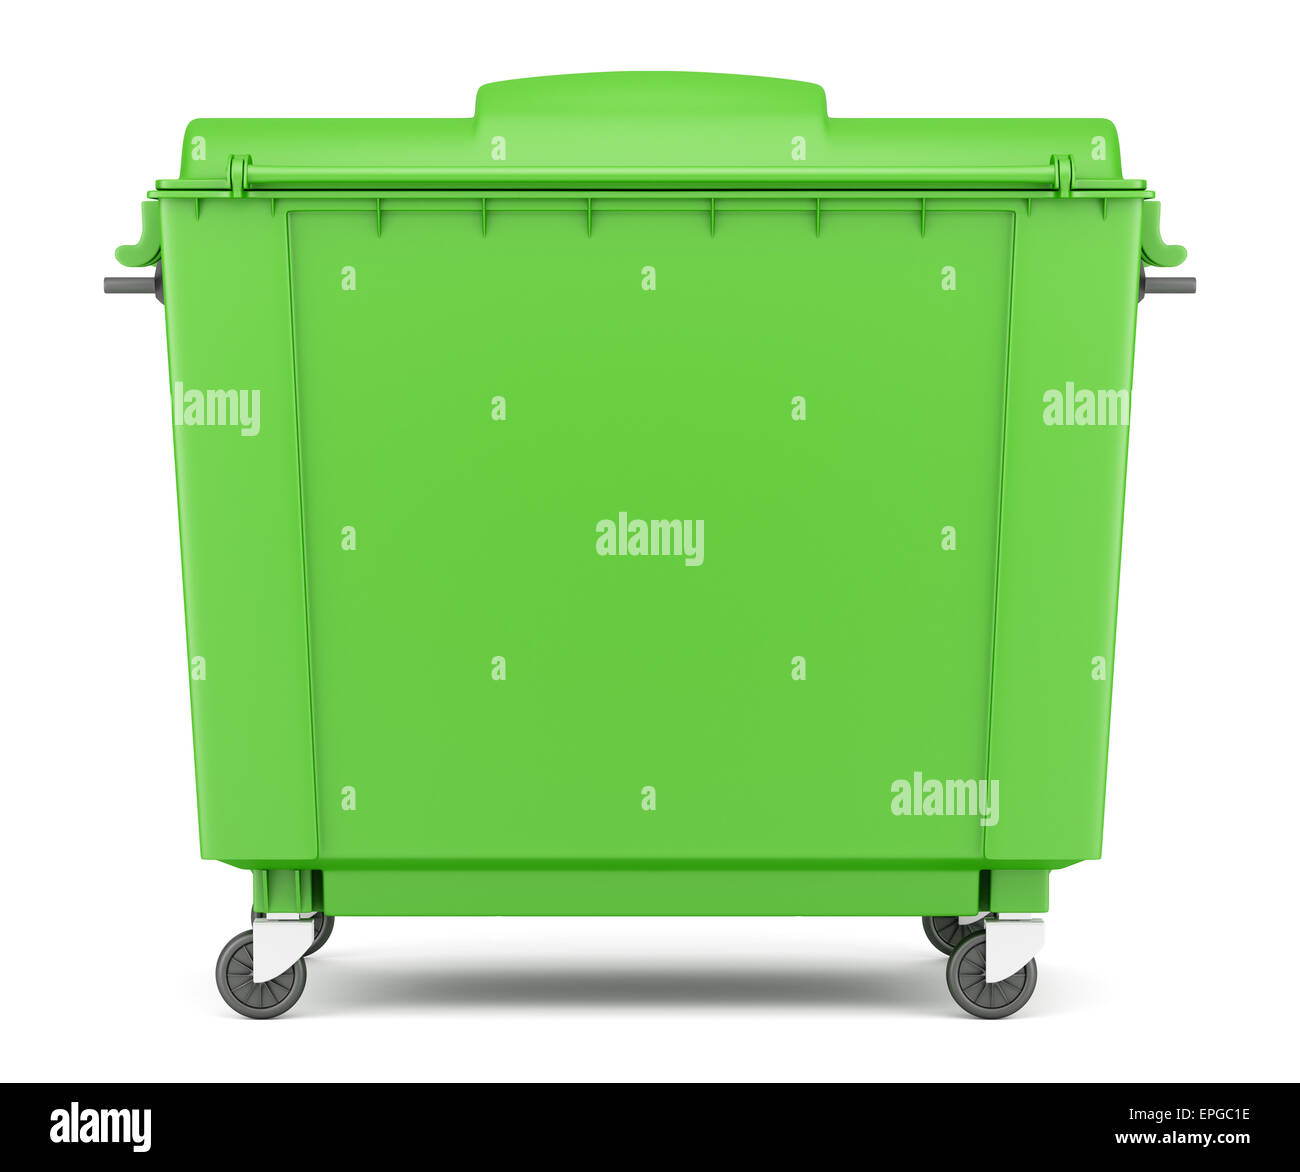 https://c8.alamy.com/comp/EPGC1E/green-garbage-container-isolated-on-white-EPGC1E.jpg